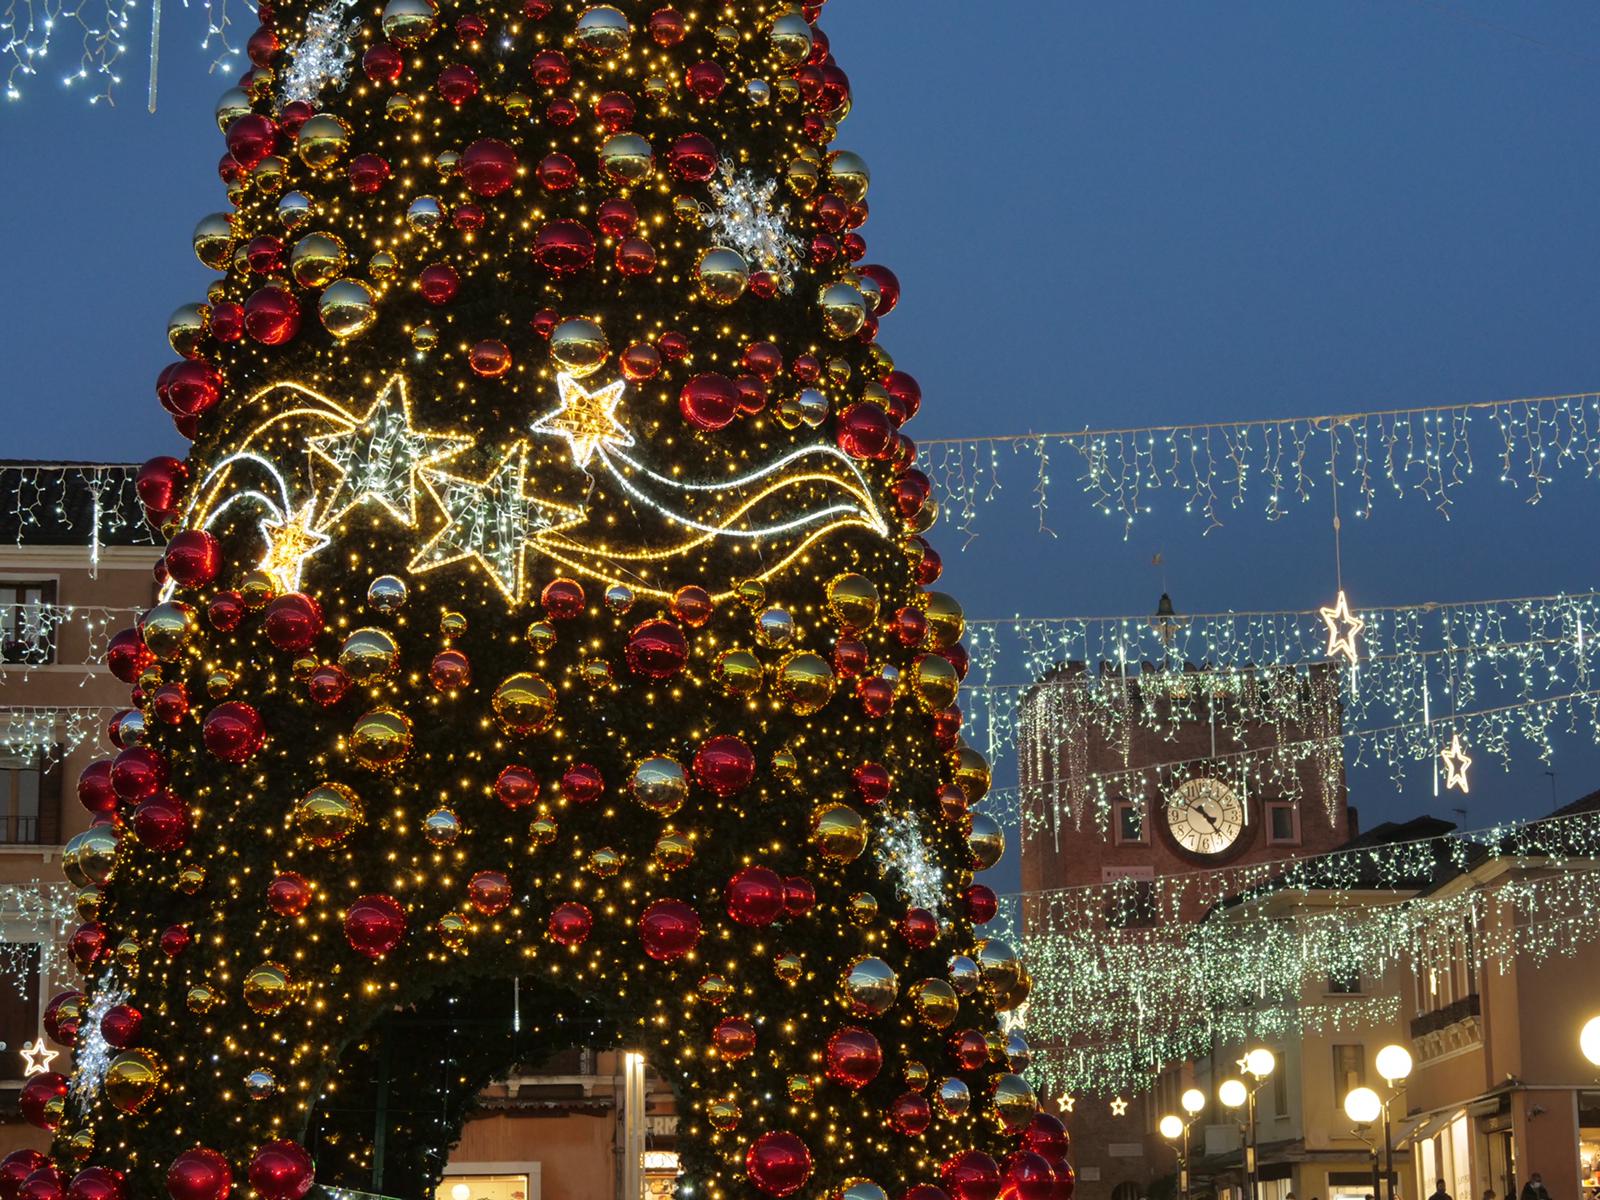 Natale di luce 2020: acceso dal sindaco Brugnaro il grande albero di Piazza Ferretto - VIDEO e FOTO